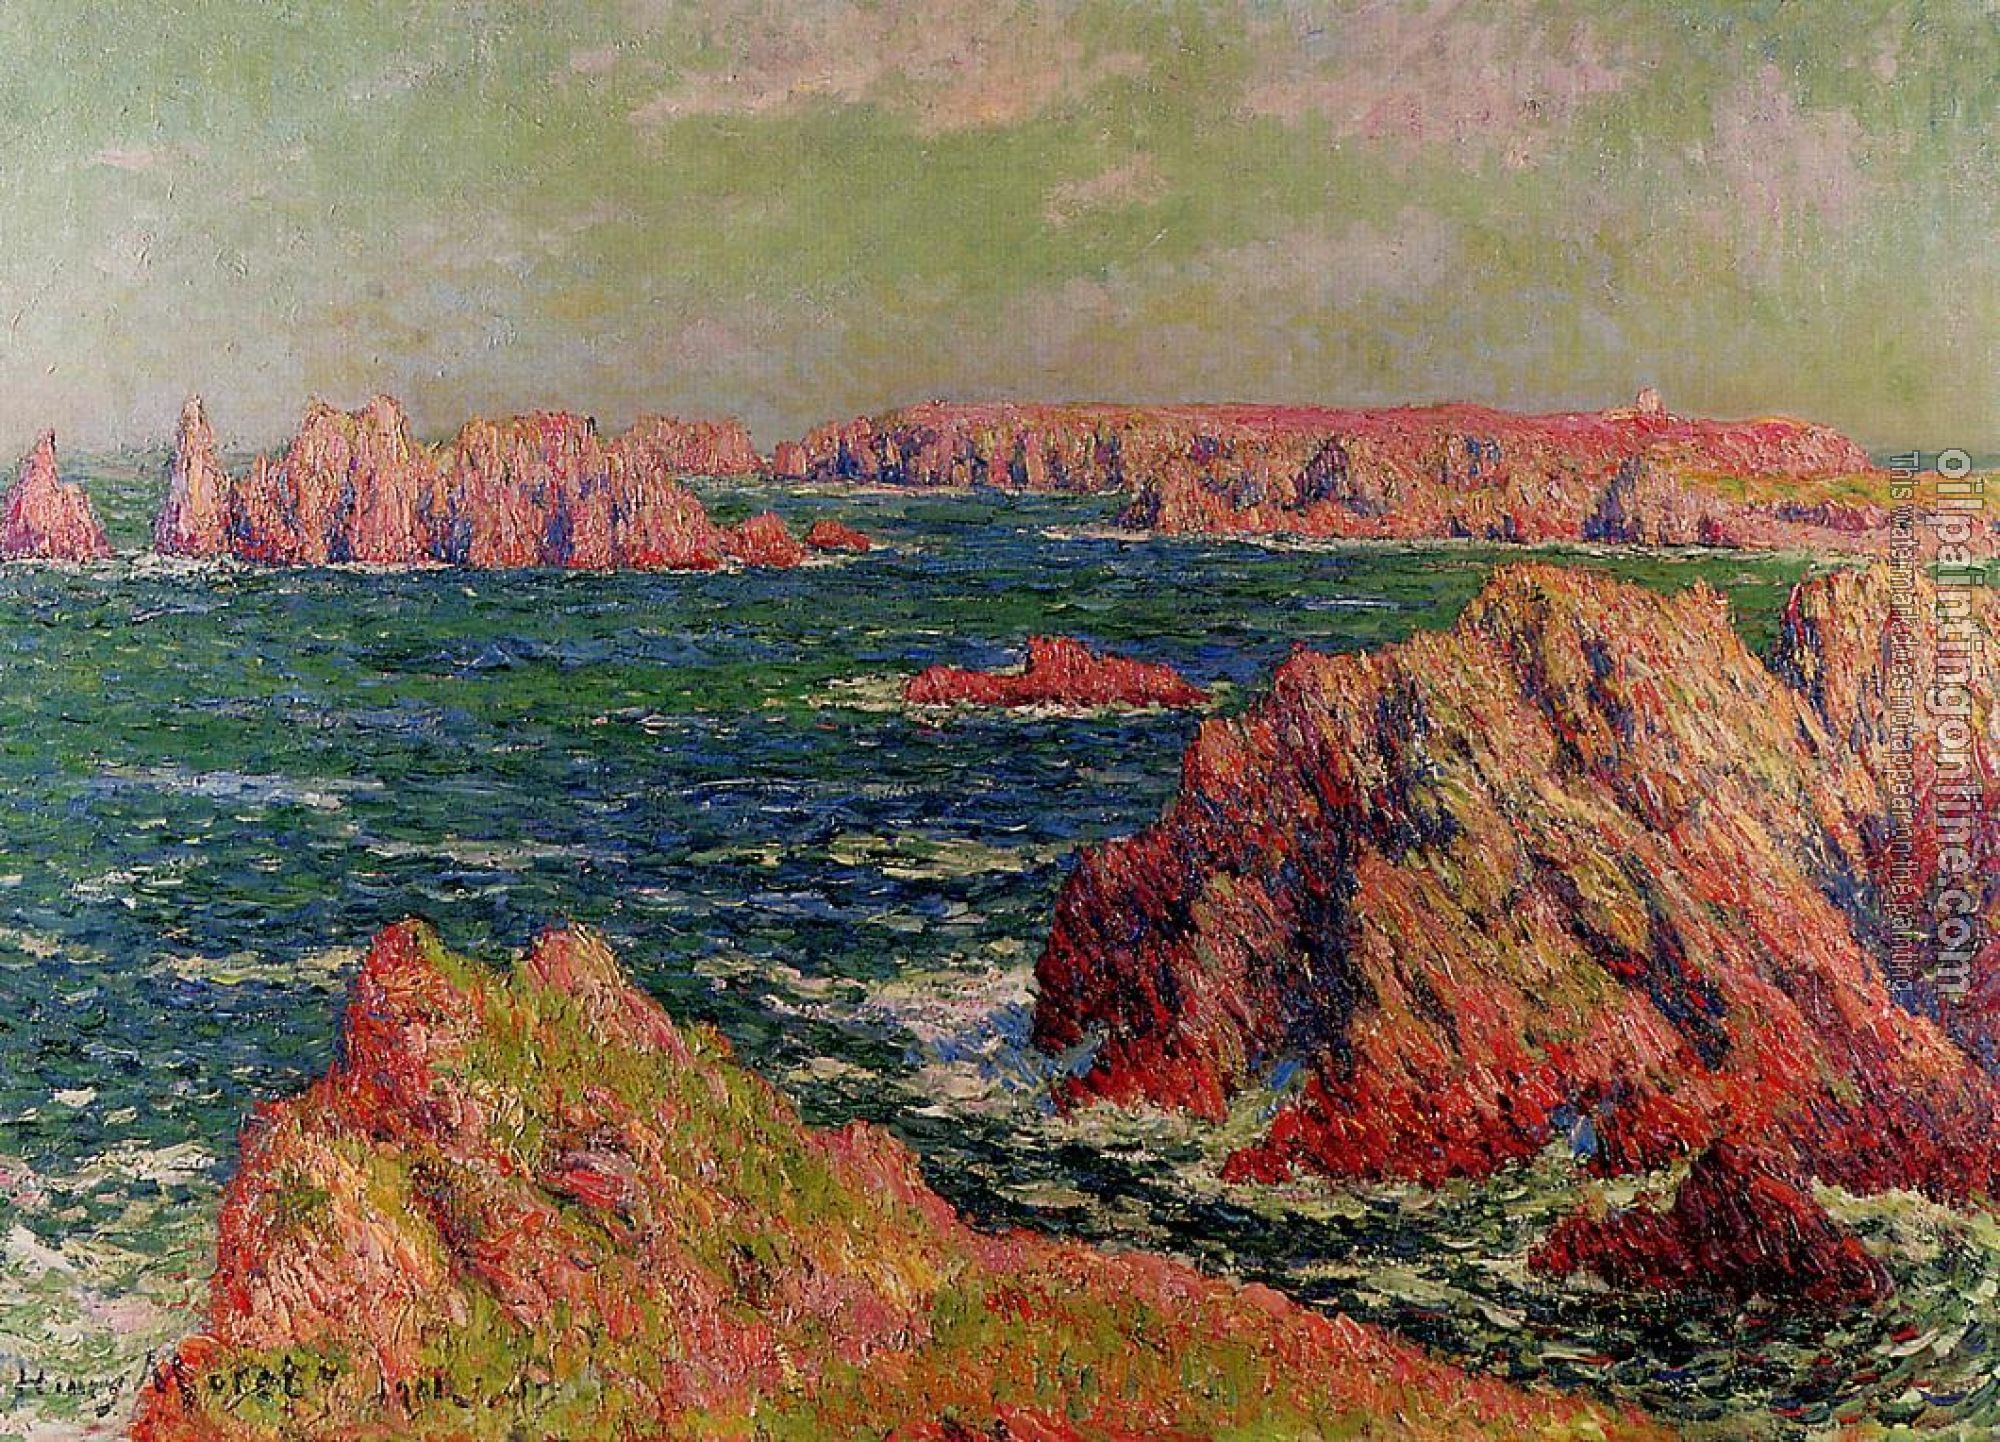 Moret, Henri - The Cliffs at Belle Ile